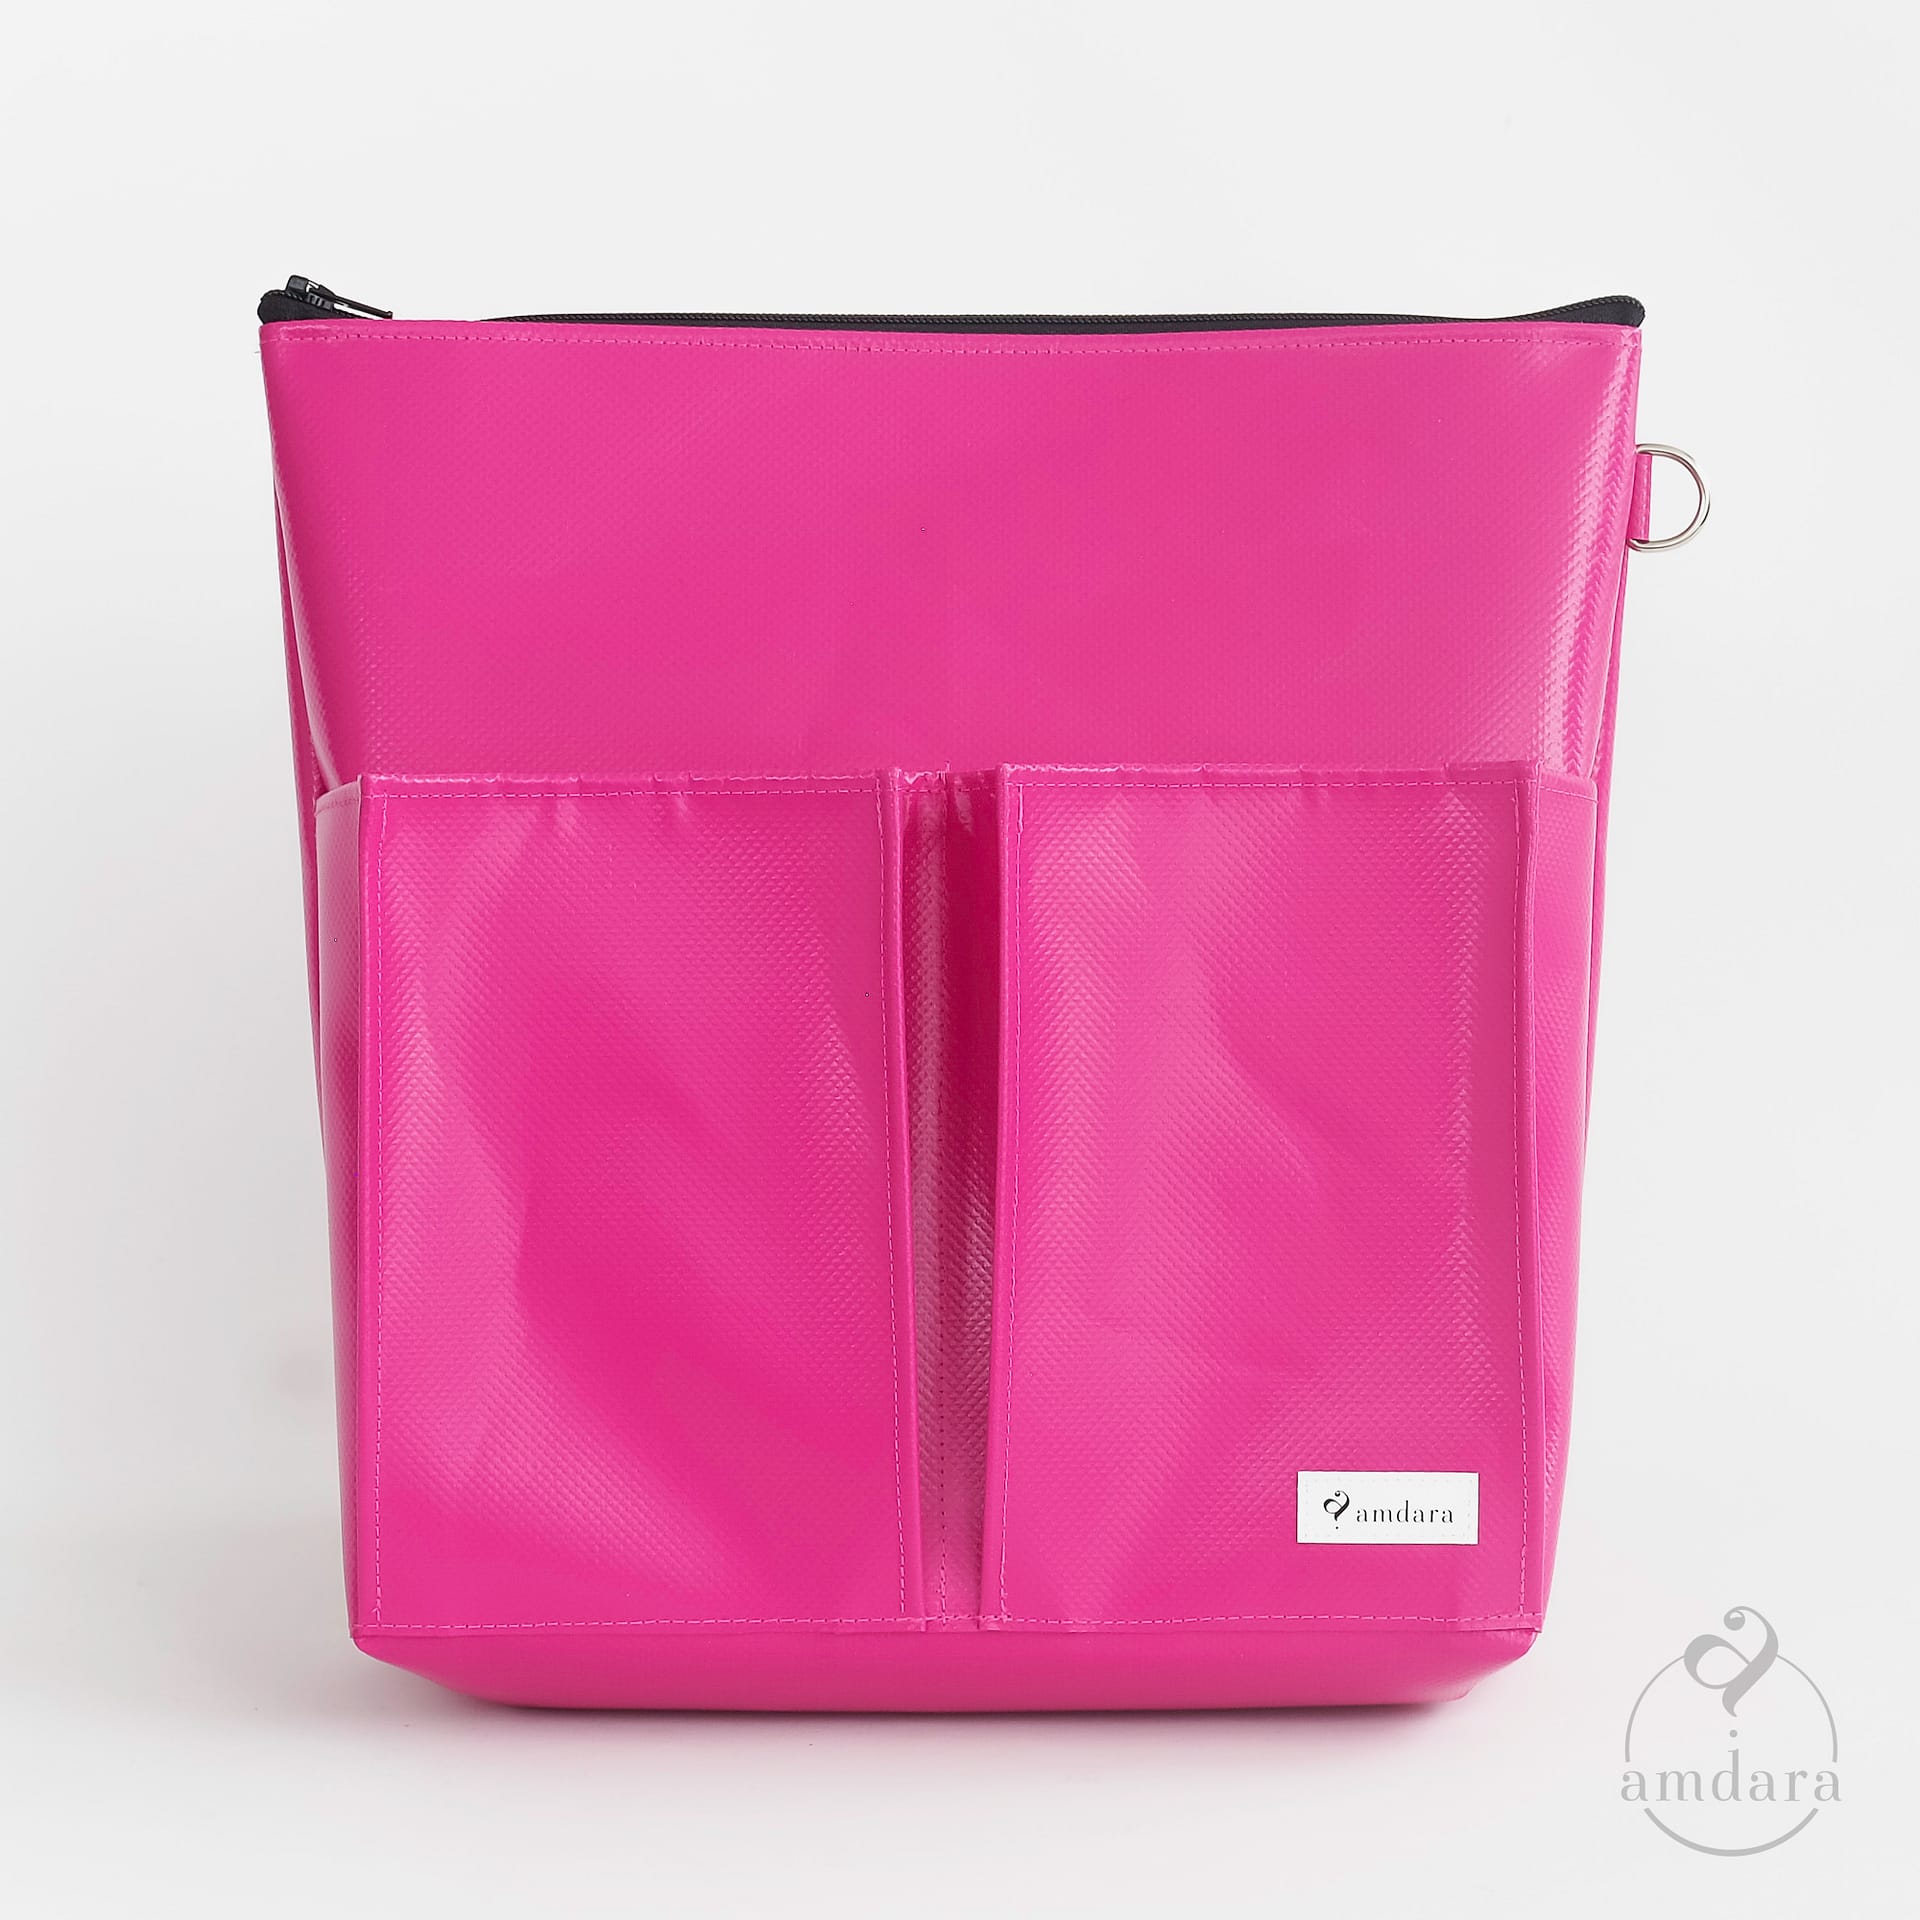 Taschenorganizer Hochformat - Wähle deine Farbe - amdara